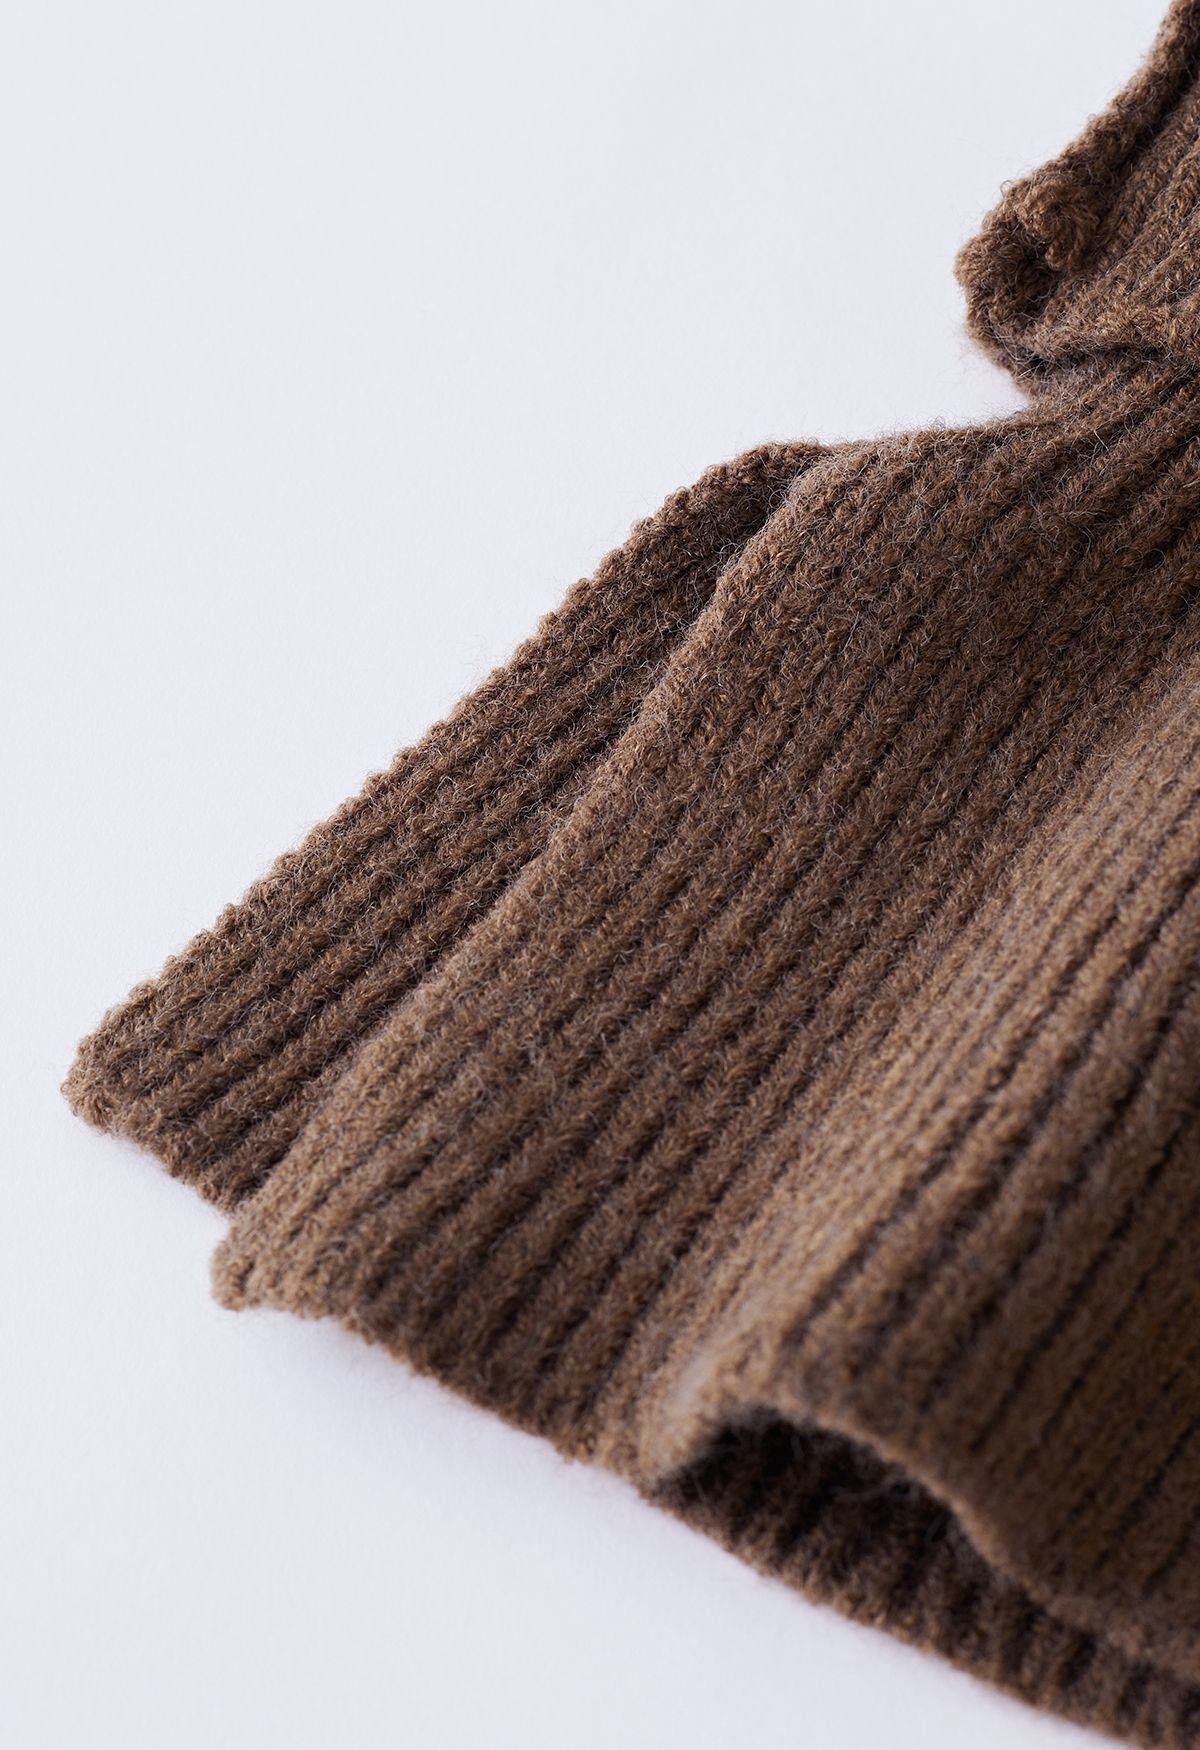 Suéter de punto a rayas con bufanda removible en marrón